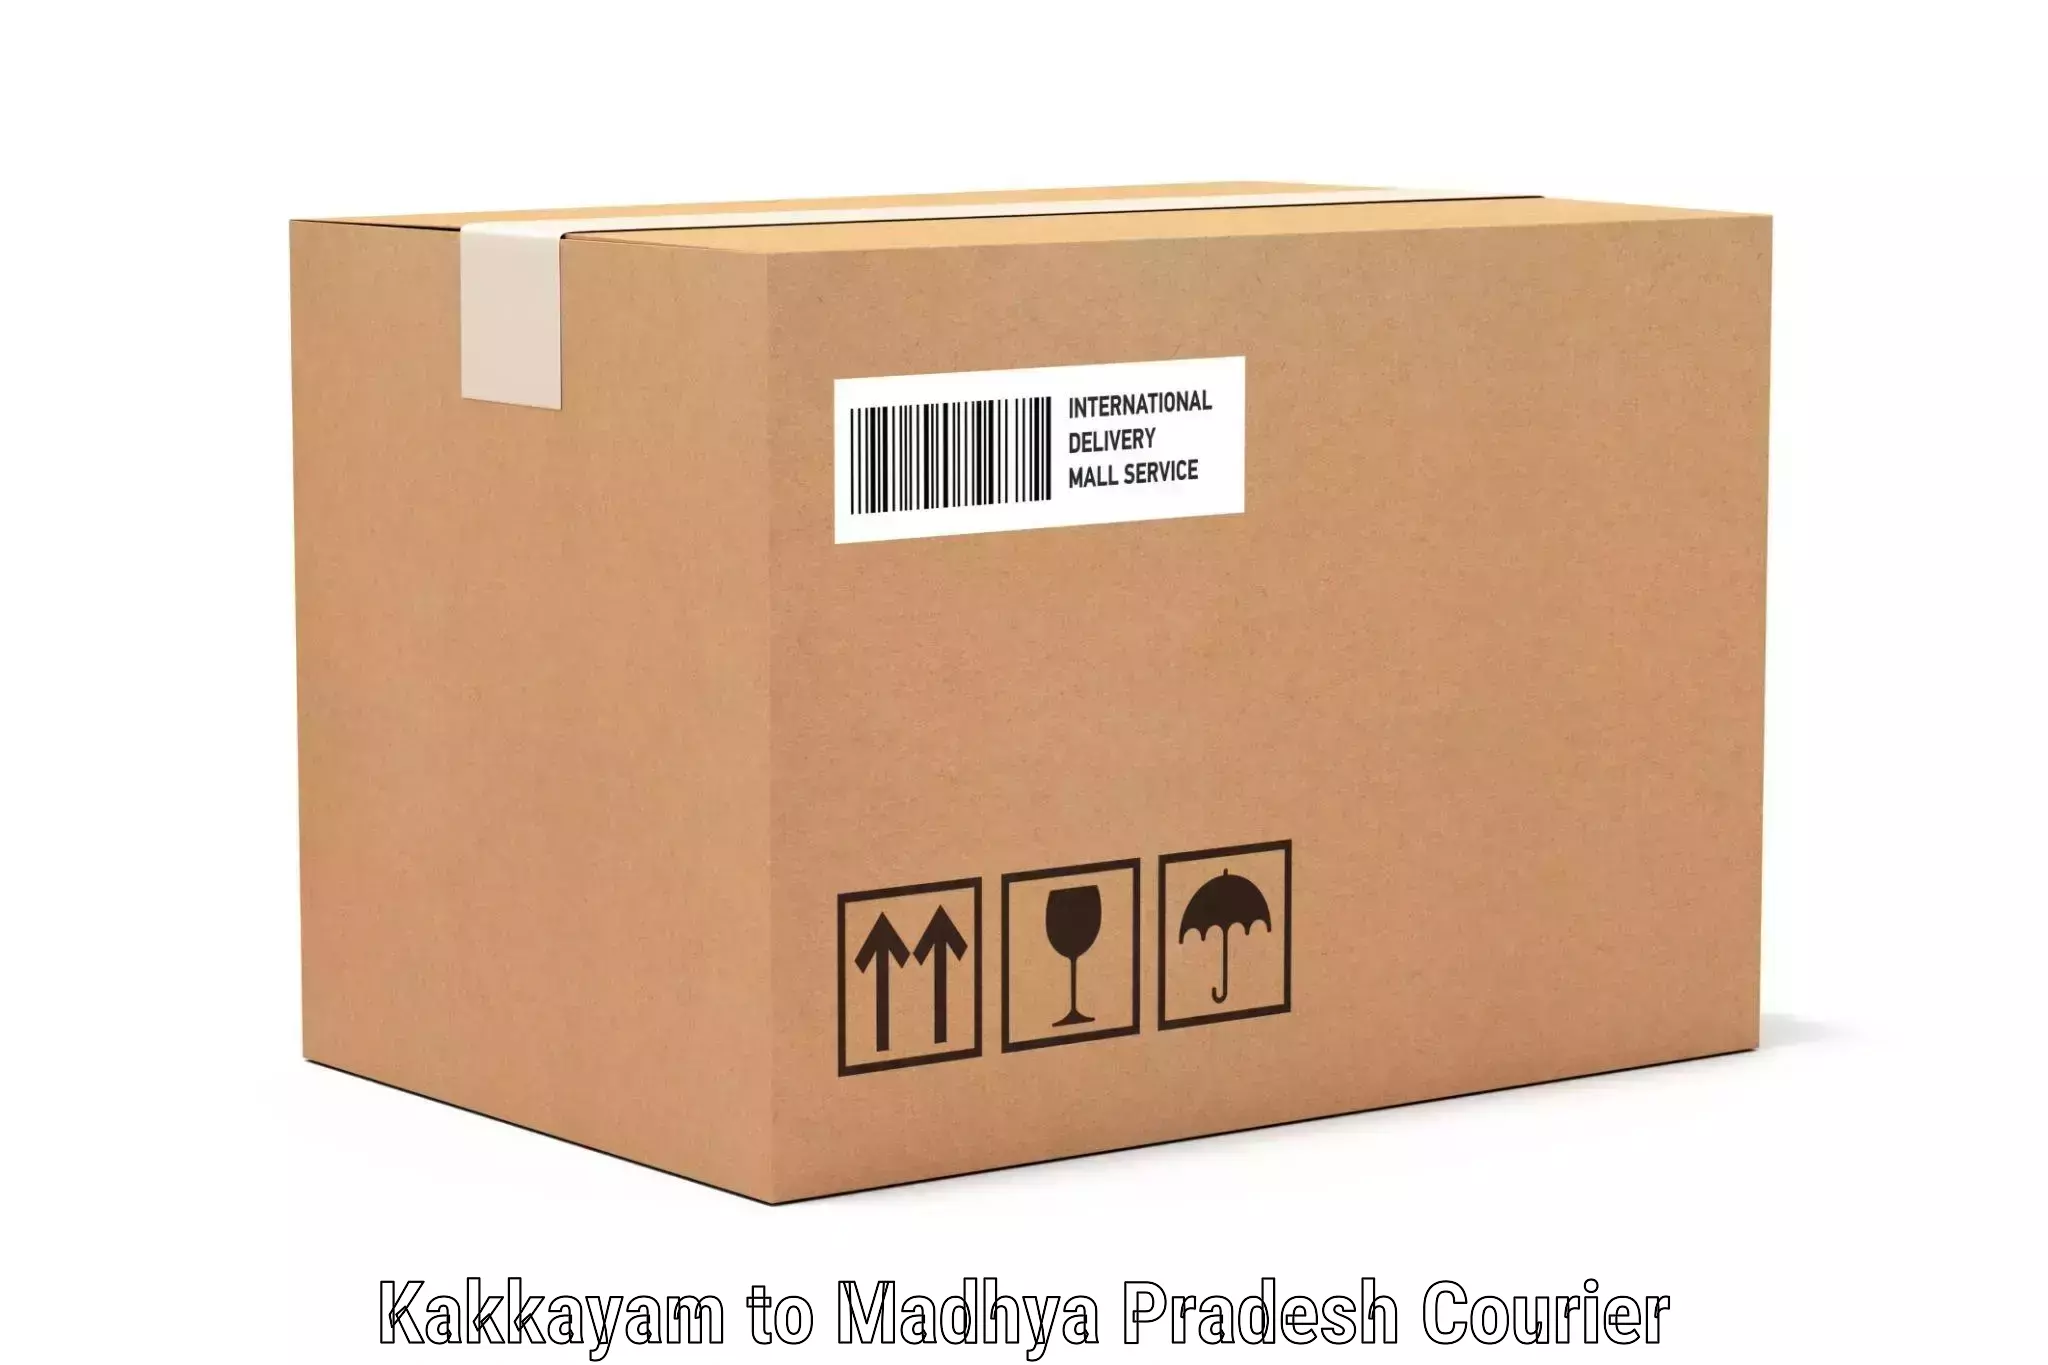 Luggage delivery app Kakkayam to Mundi